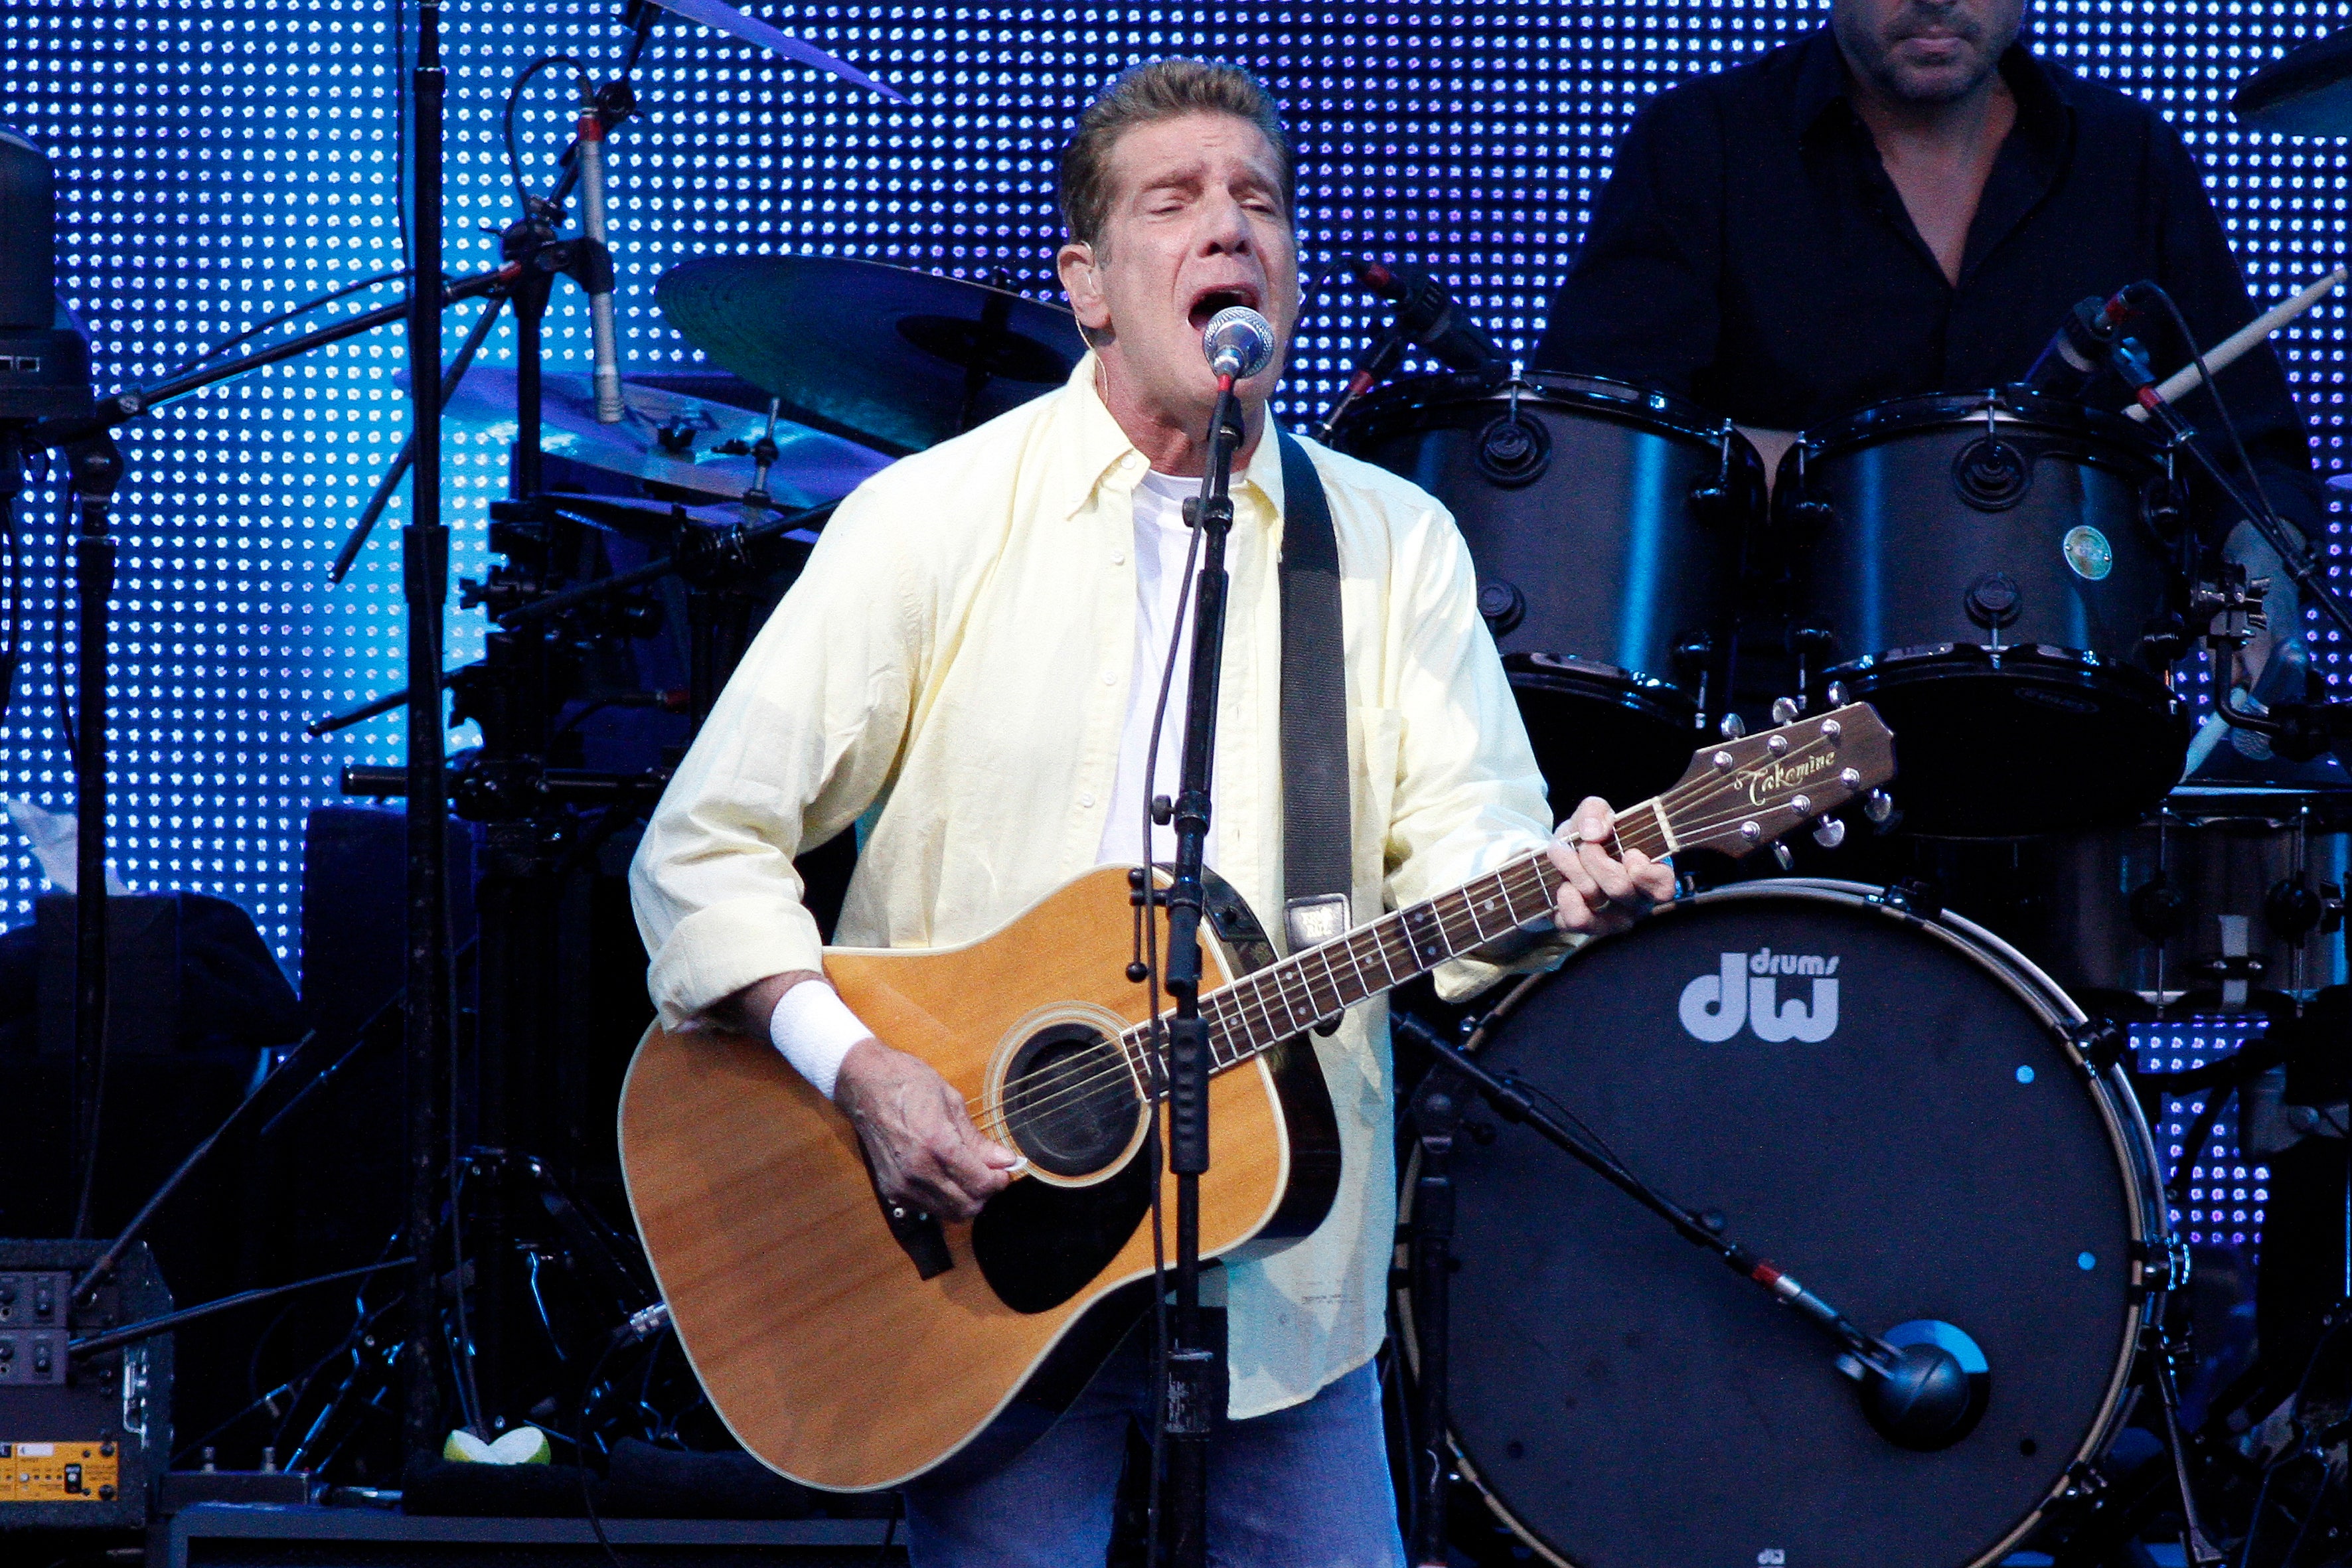 Glenn Frey singing and playing guitar